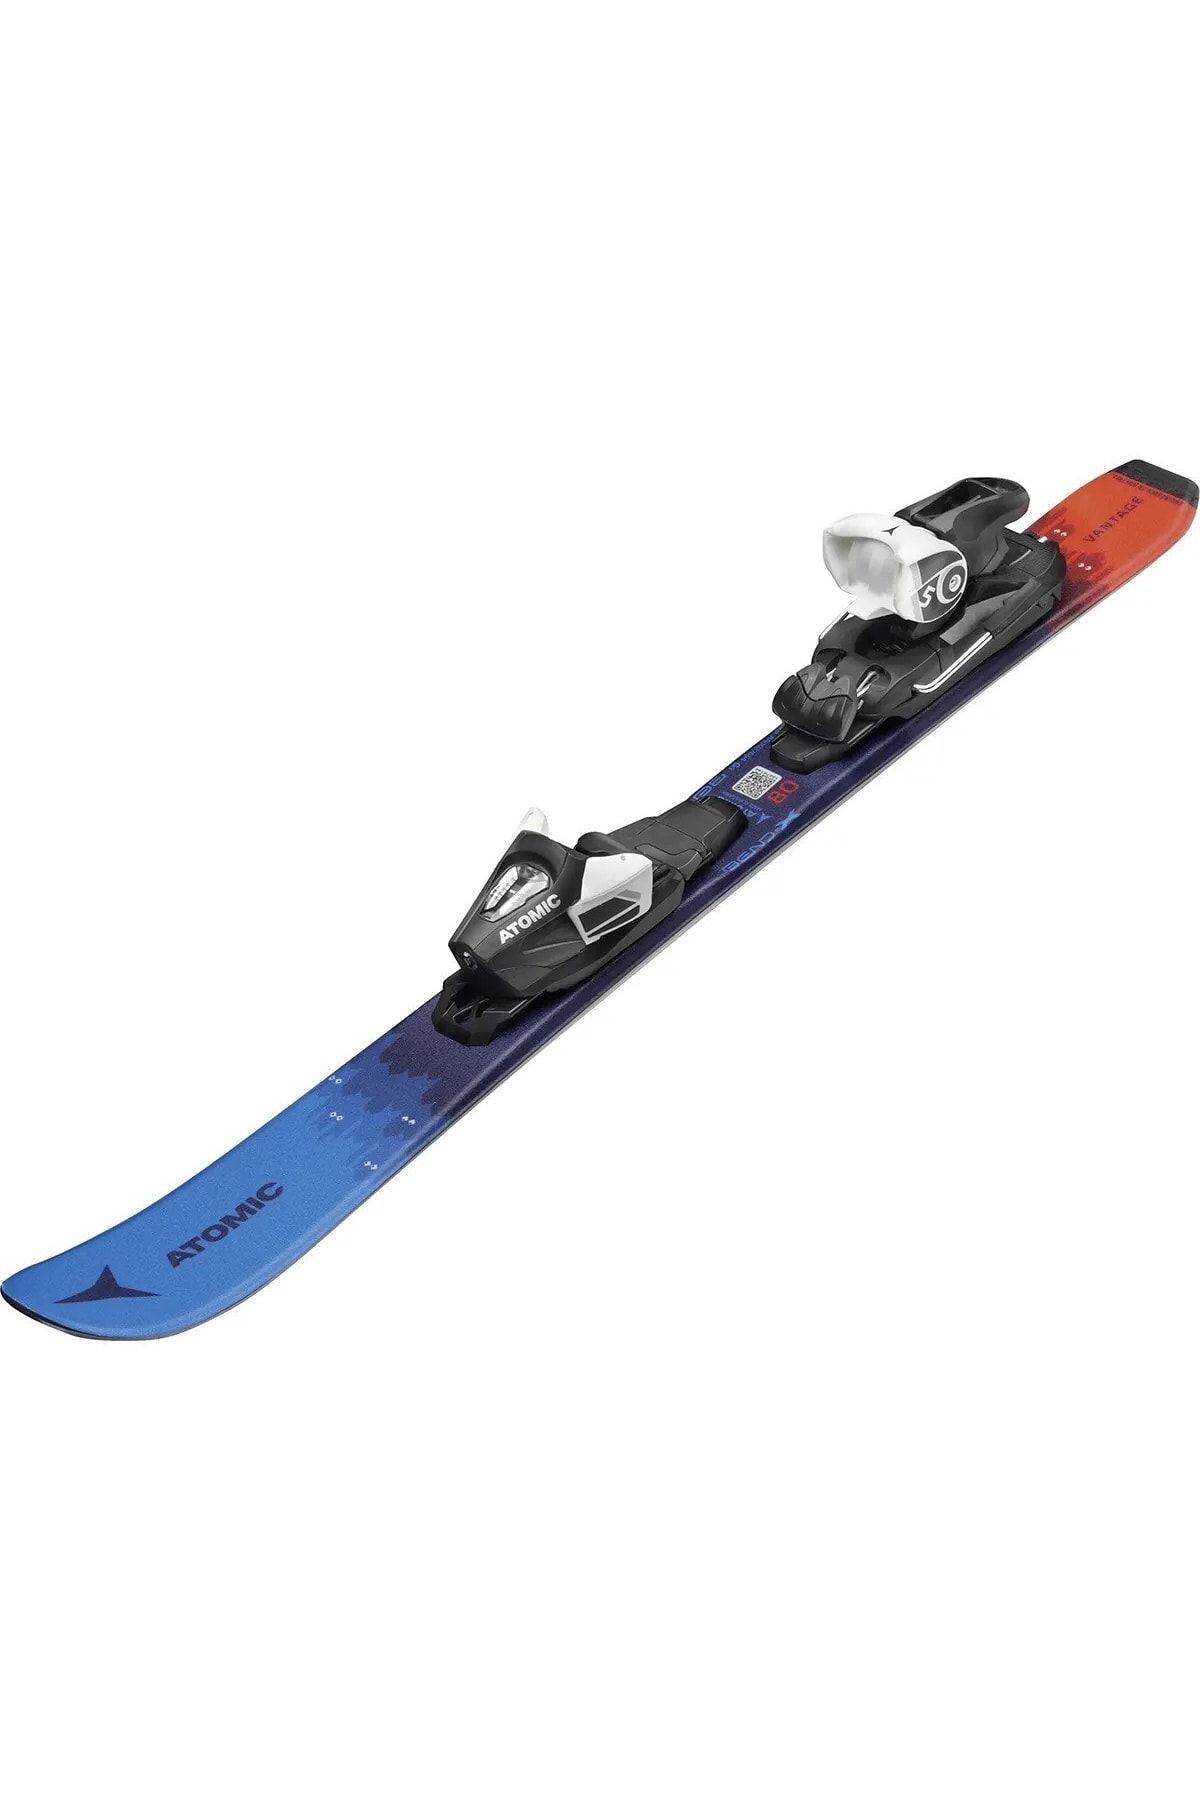 Atomic Vantage Jr. Çocuk Kayak Takımı Mavi Fiyatı, Yorumları